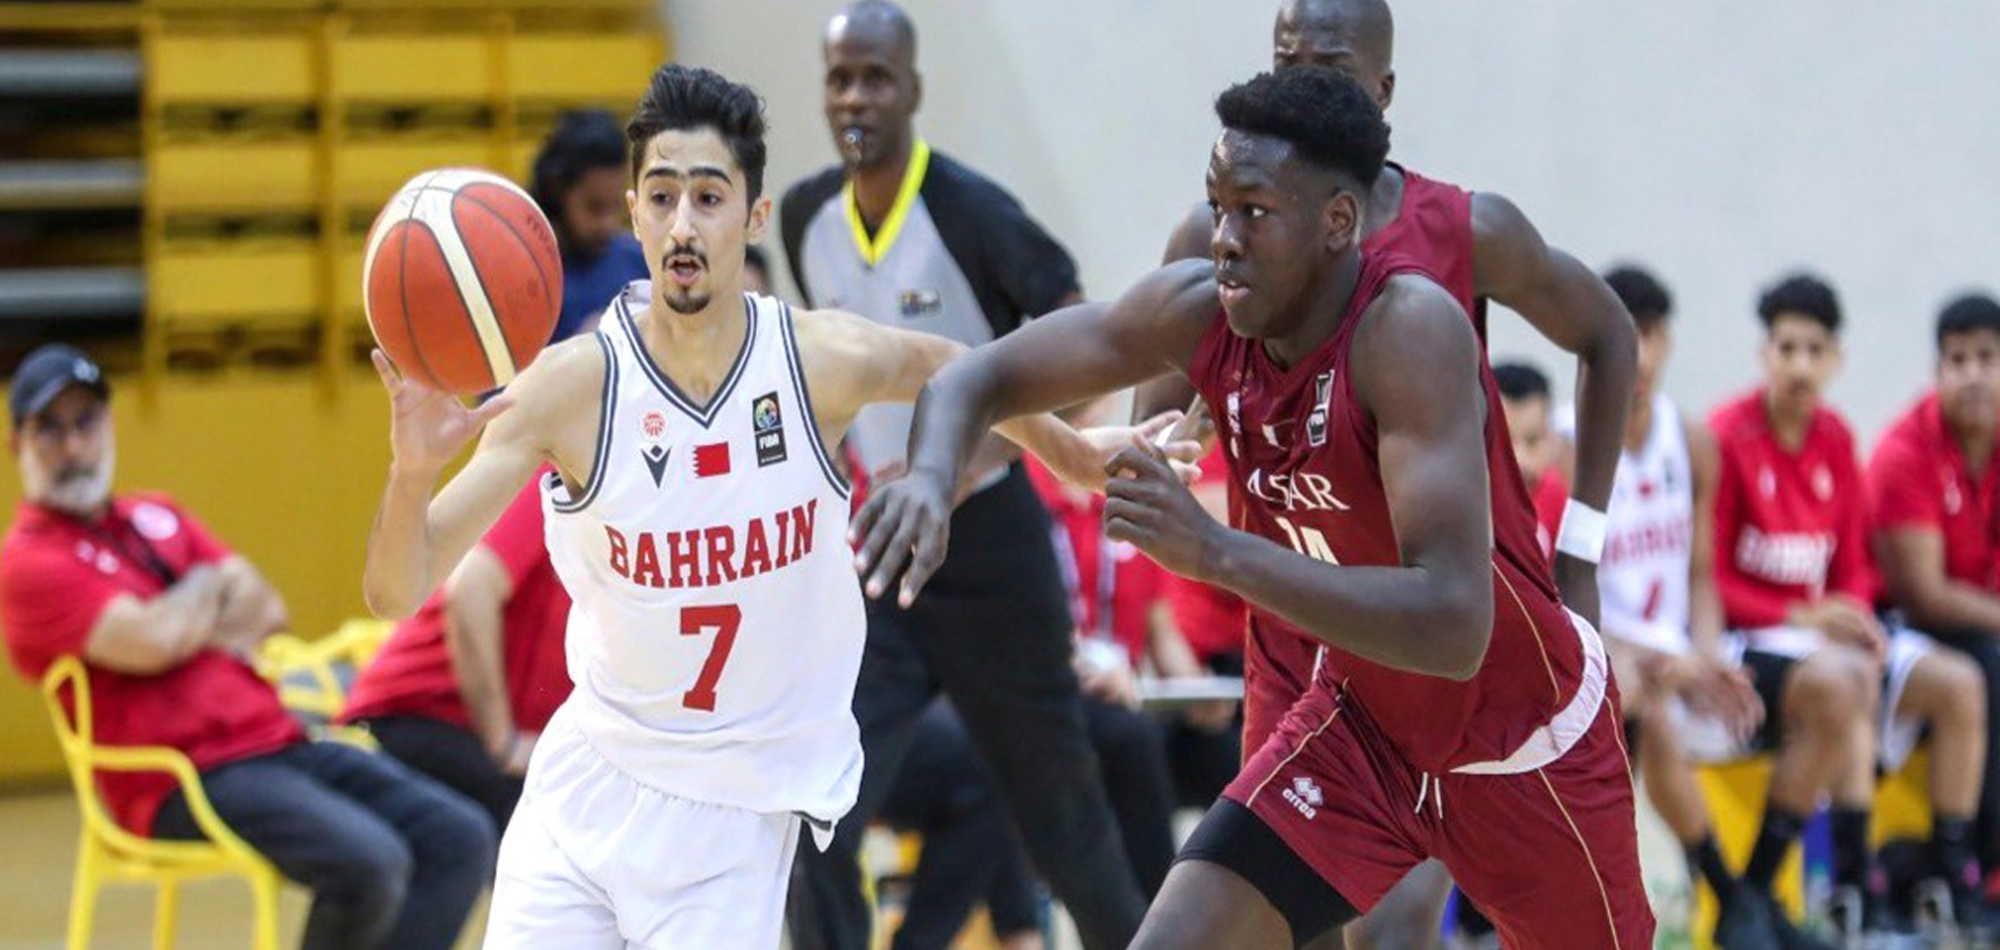 Qatar beat Bahrain to reach GCC Youth Basketball final